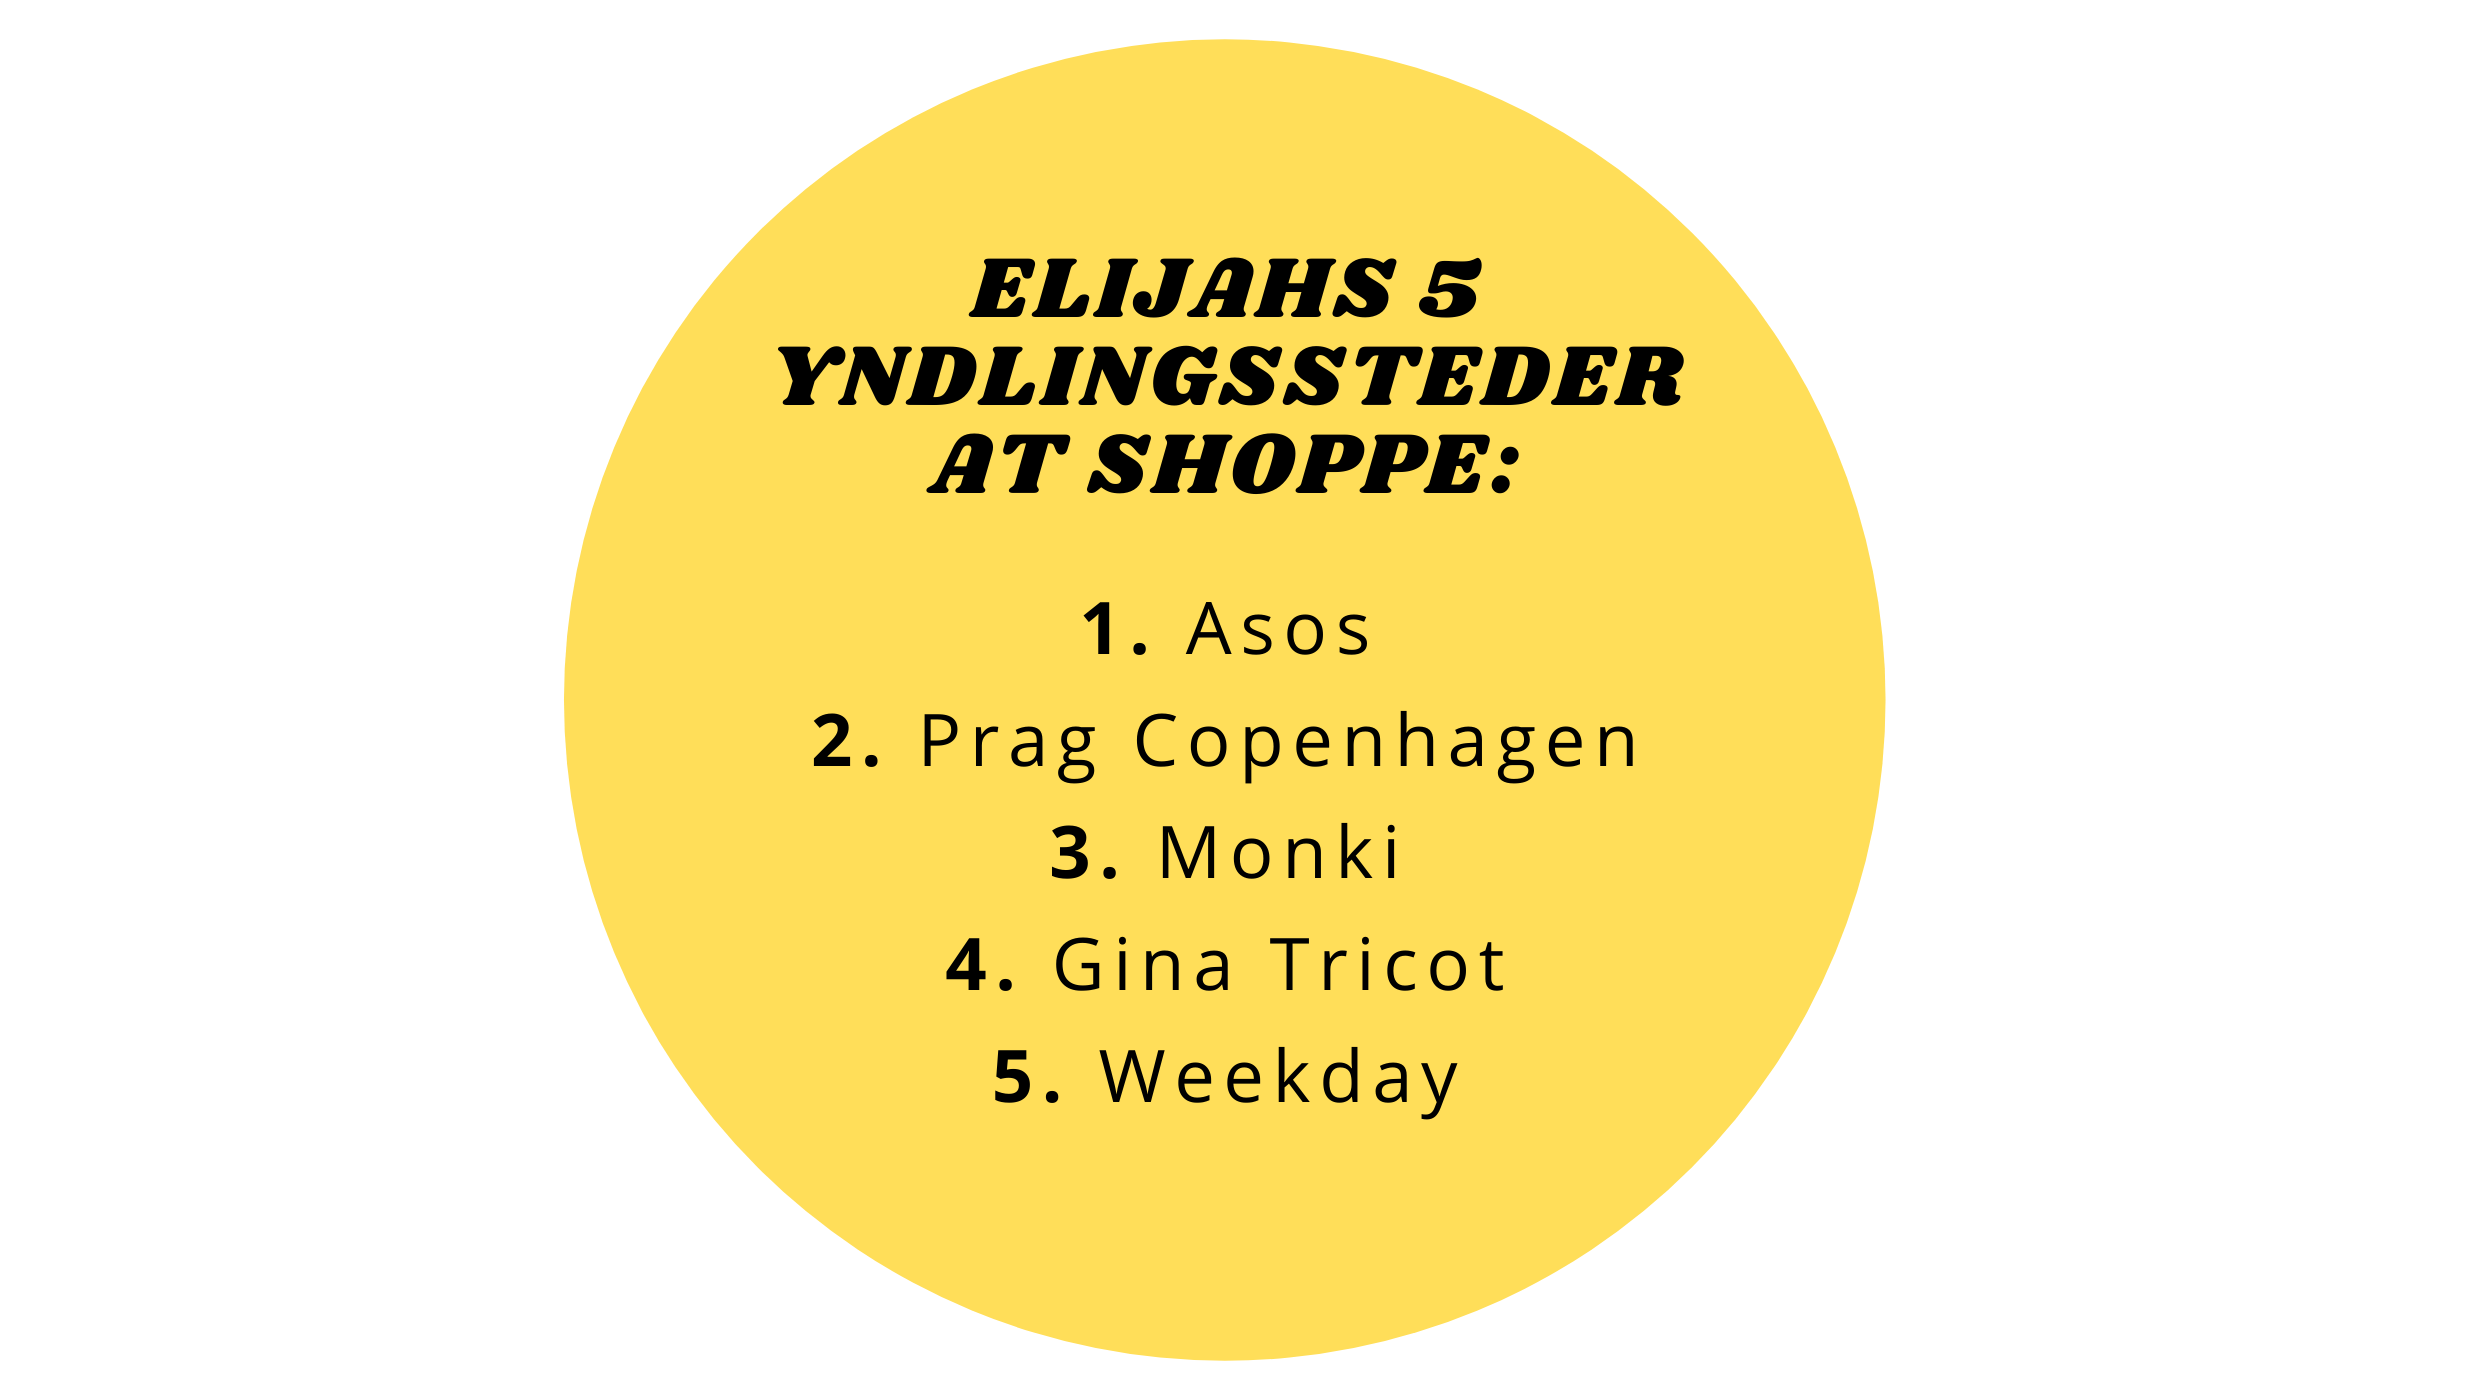 Elijah Kashmir Alis yndlingssteder at shoppe